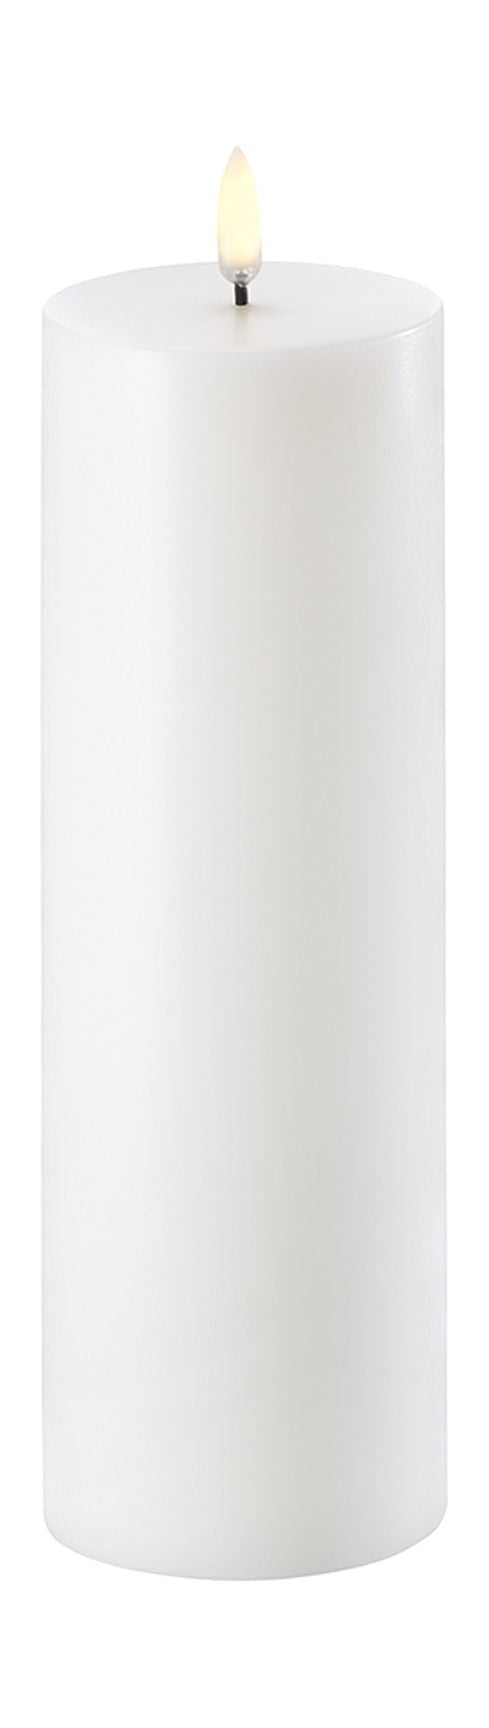 Uyuni Lighting LED -Säule Kerze 3 D Flamme Øx H 7,3x22 cm, nordisches Weiß